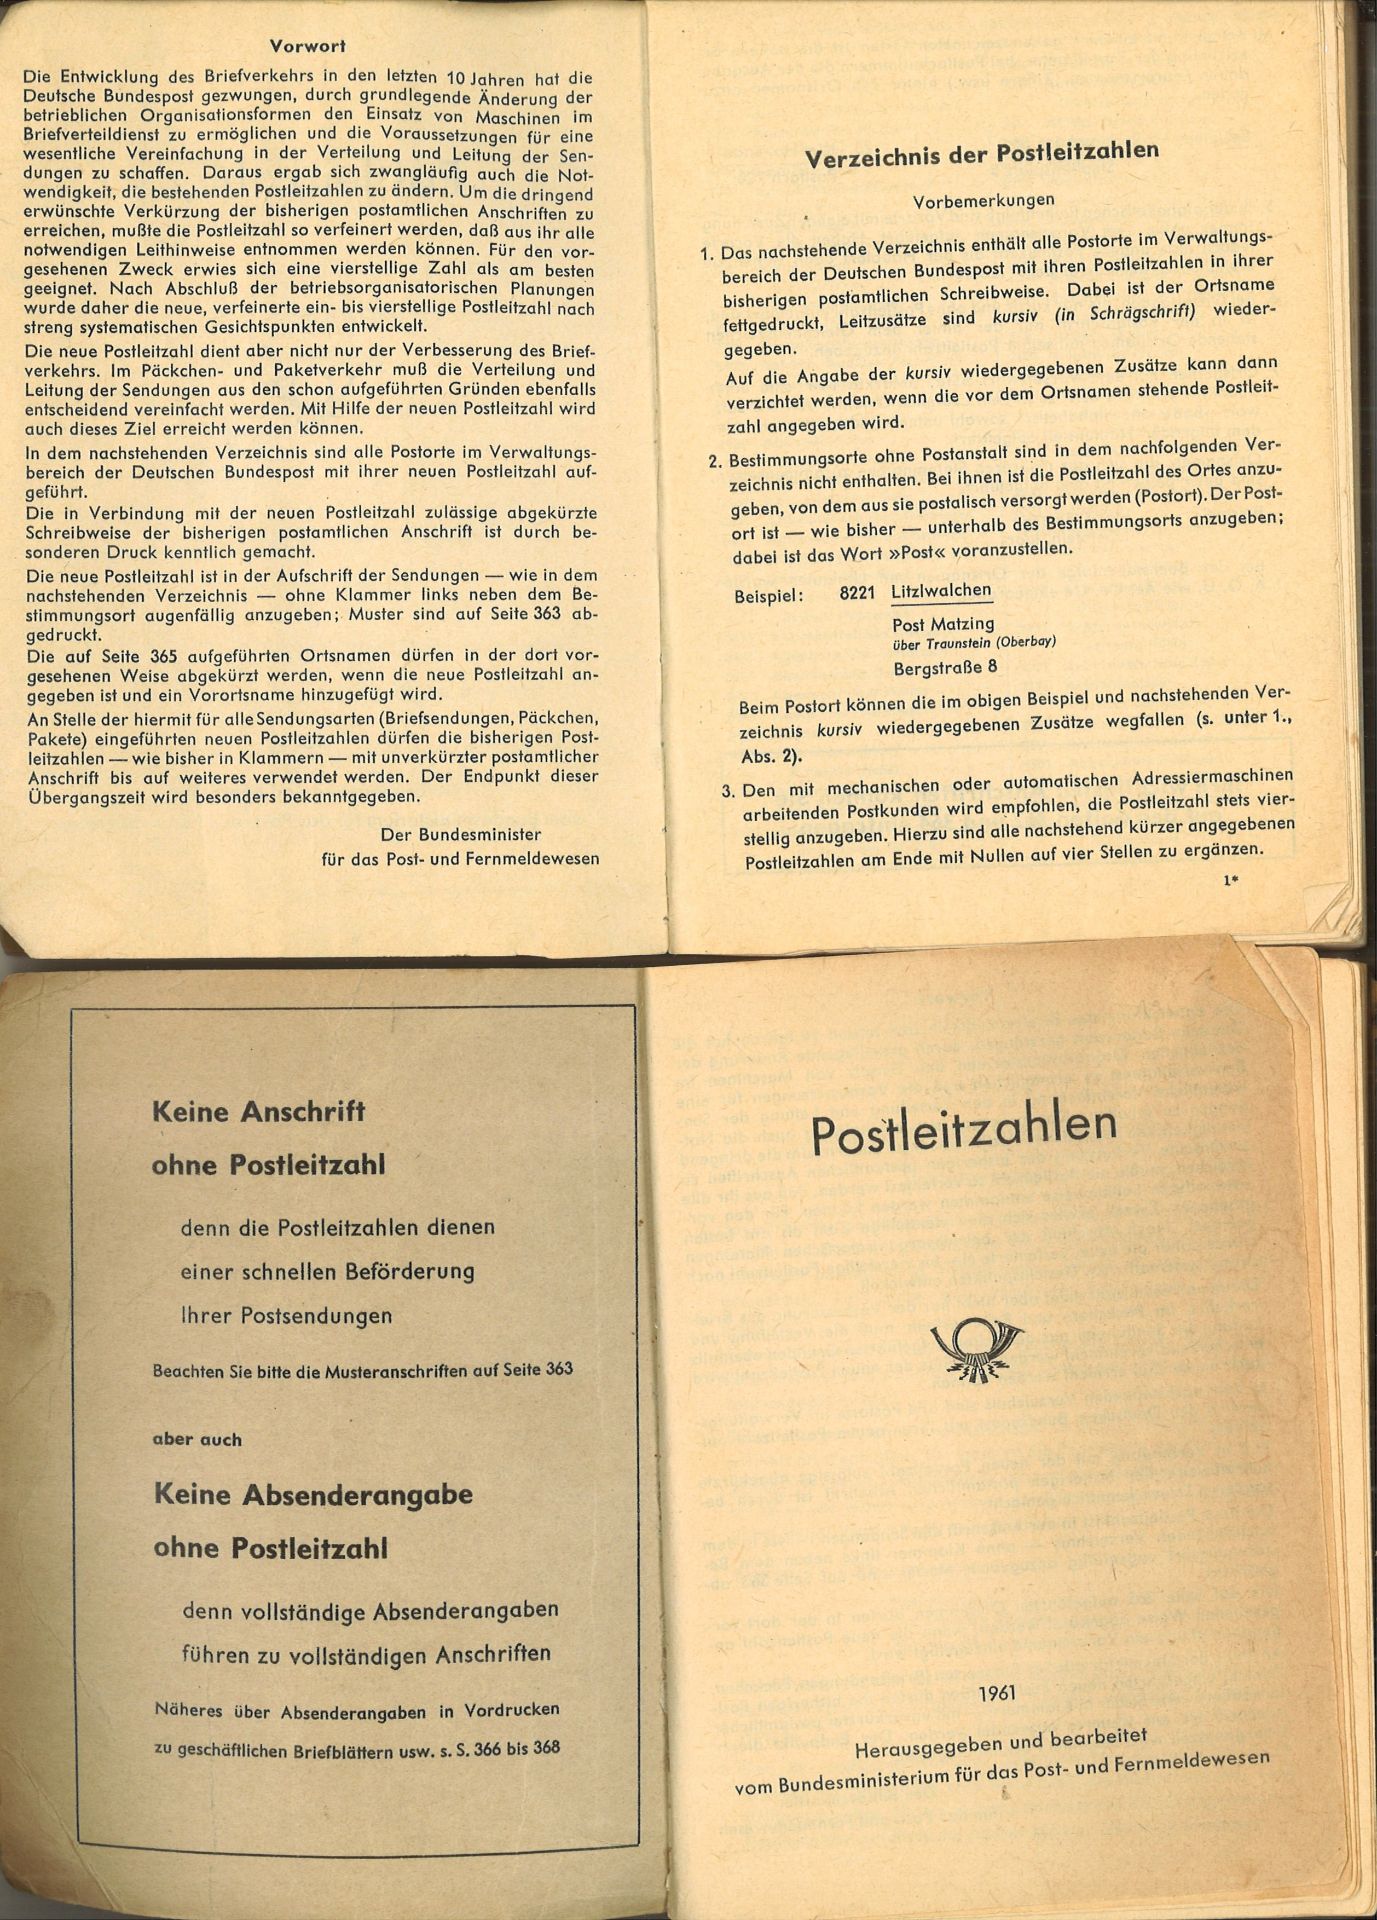 2 Postleitzahlen Bücher von 1961. Herausgegeben und bearbeitet vom Bundesministerium für das Post- - Bild 2 aus 2